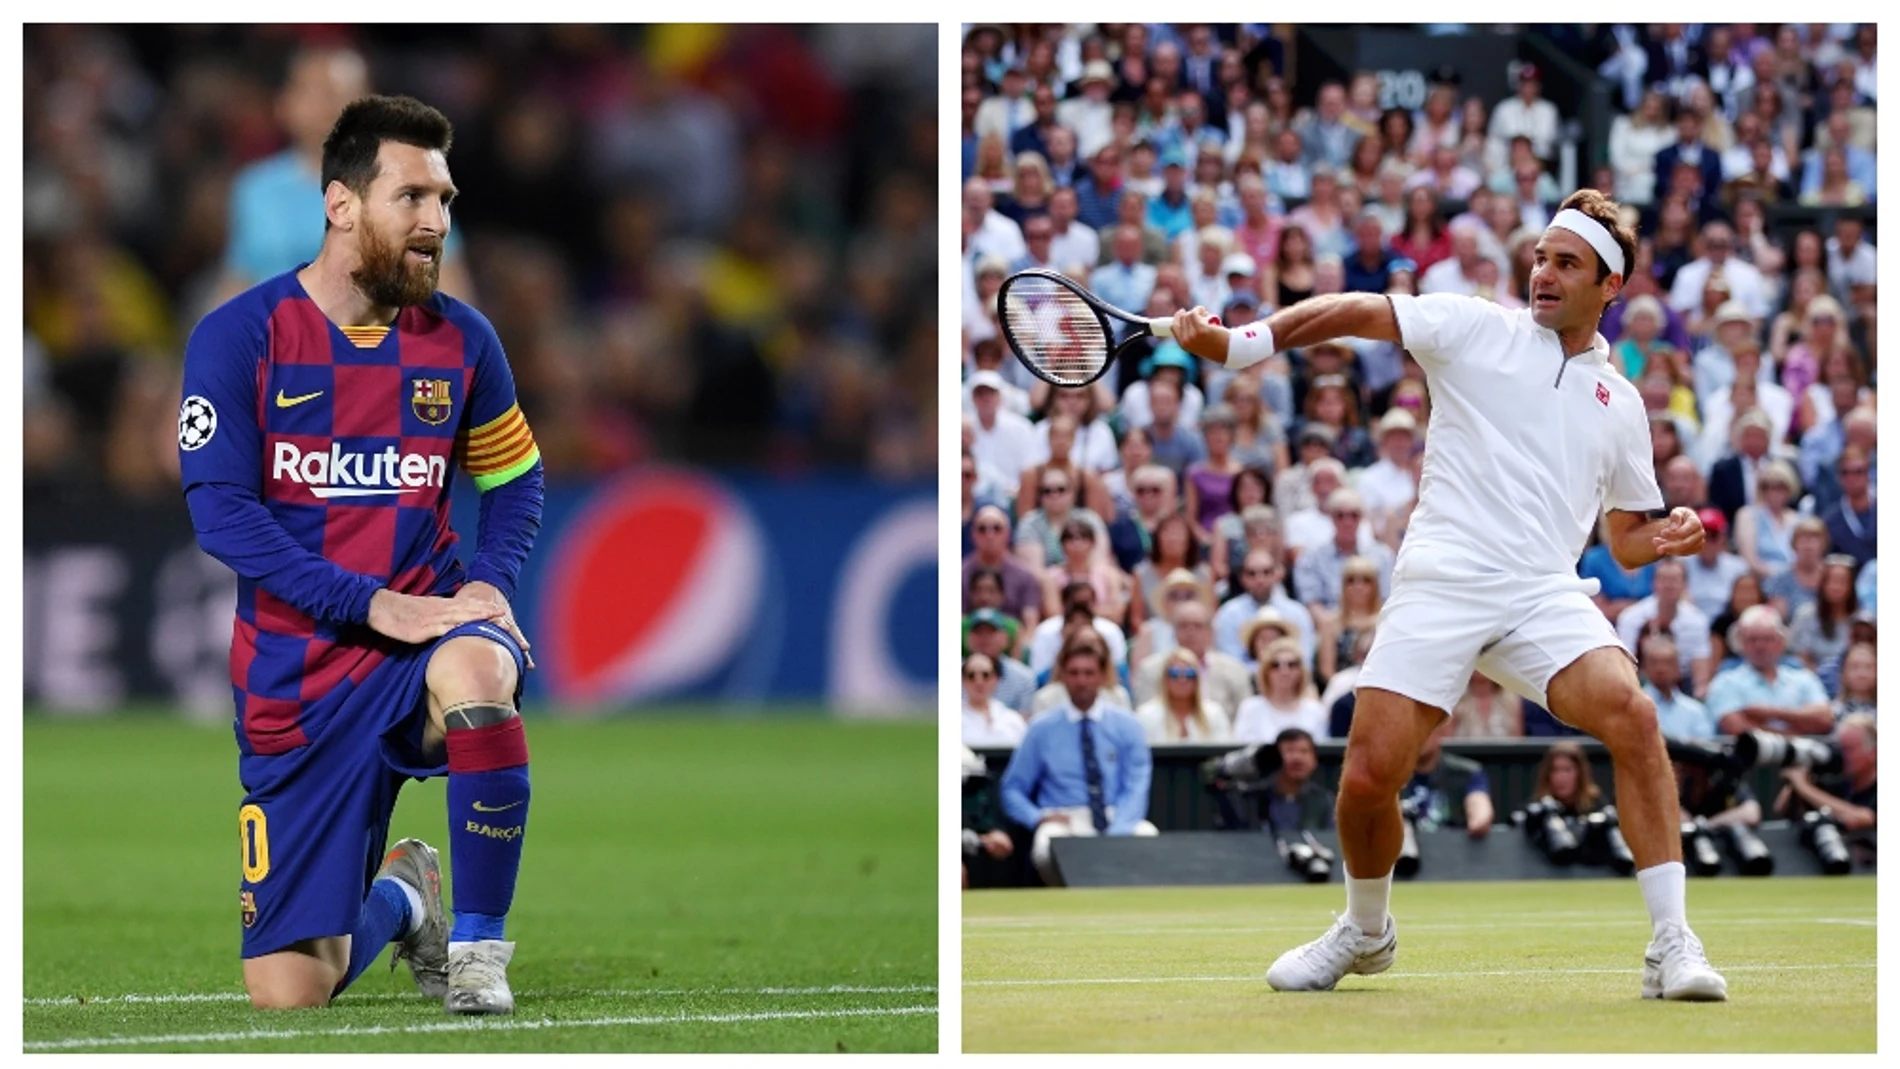 Lionel Messi y Roger Federer